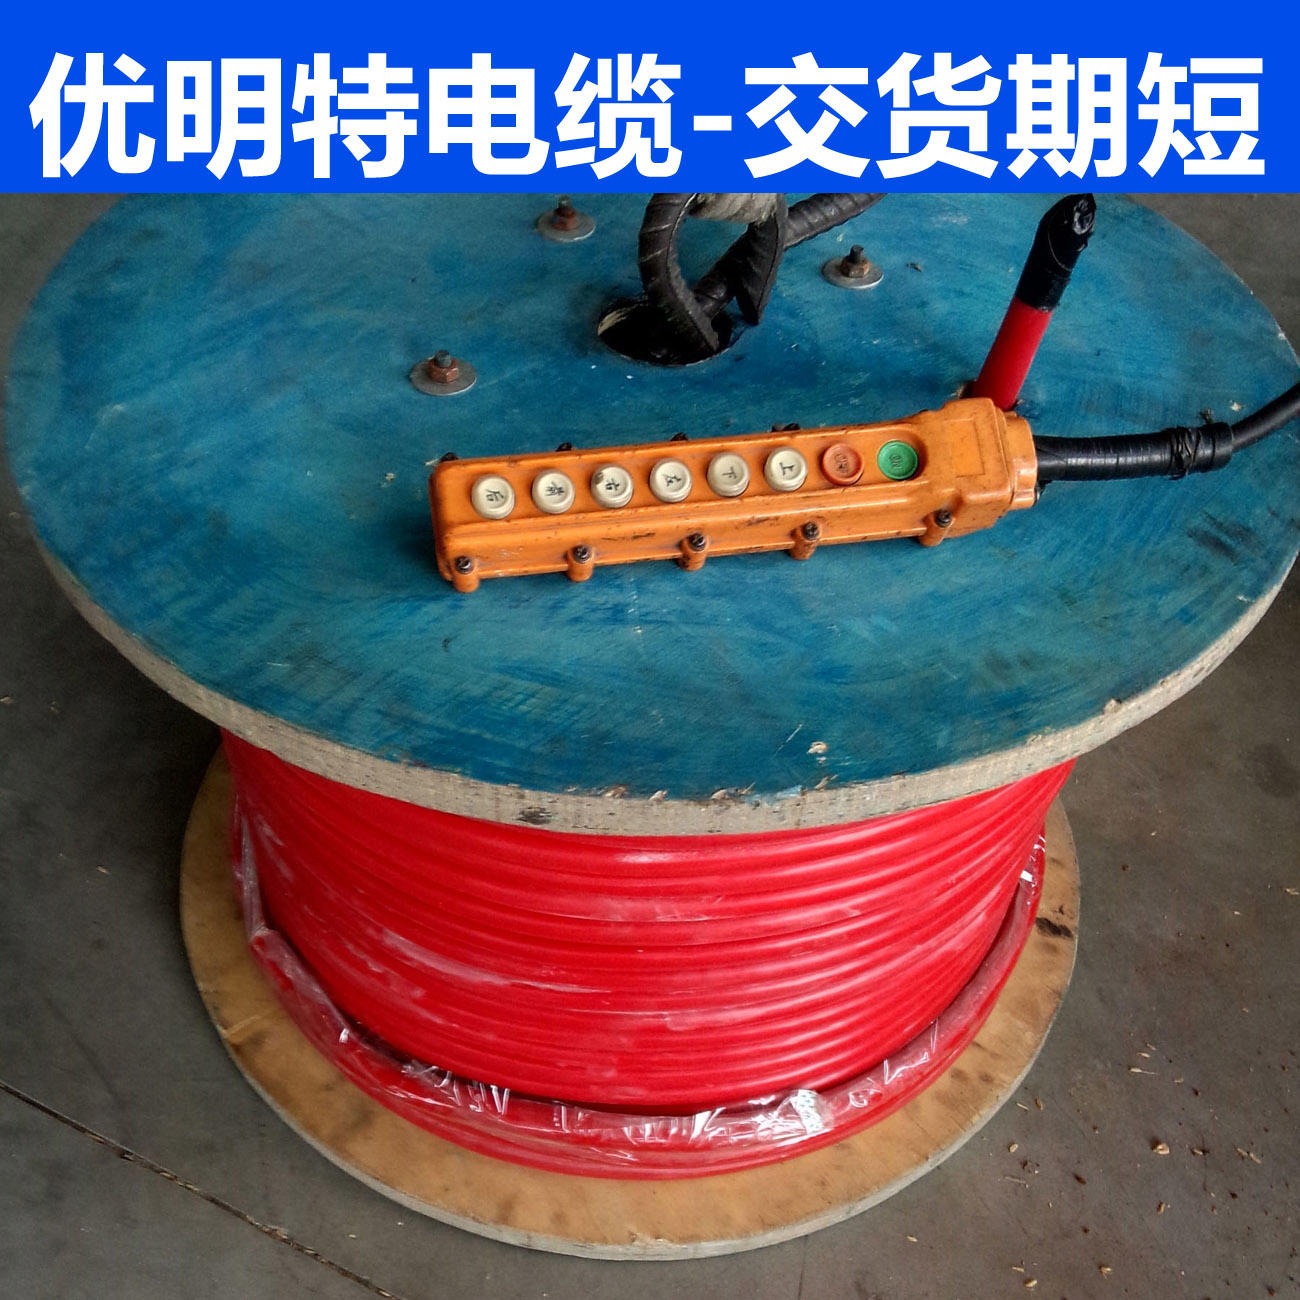 阻燃硅橡胶电缆 ZRYGC电缆 570平方电缆 生产厂家 优明特现货库存